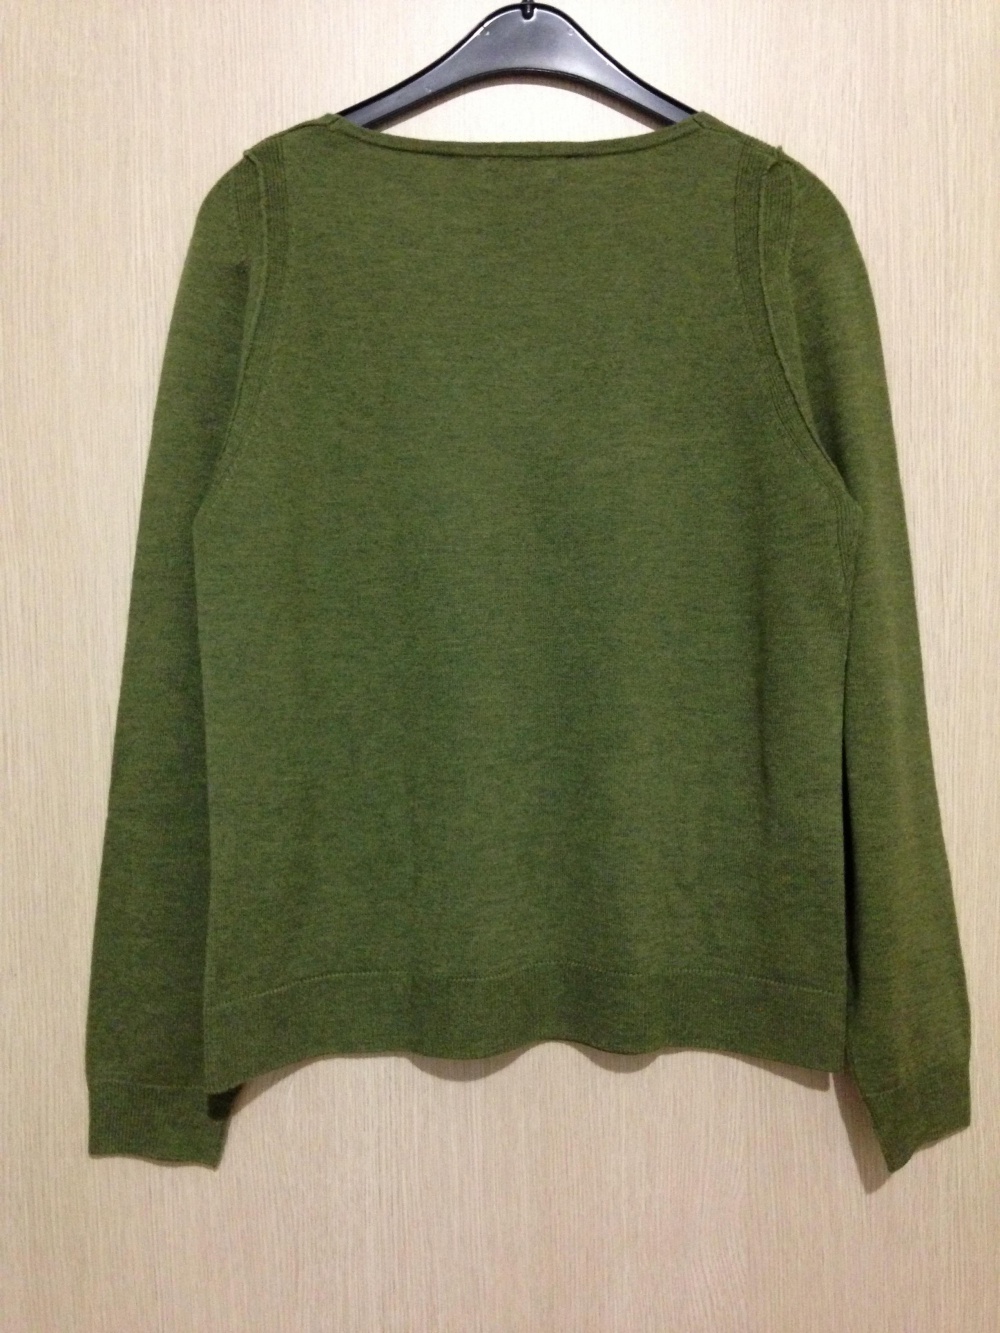 Пуловер " ONLI ", 46-48 размер, Дания.